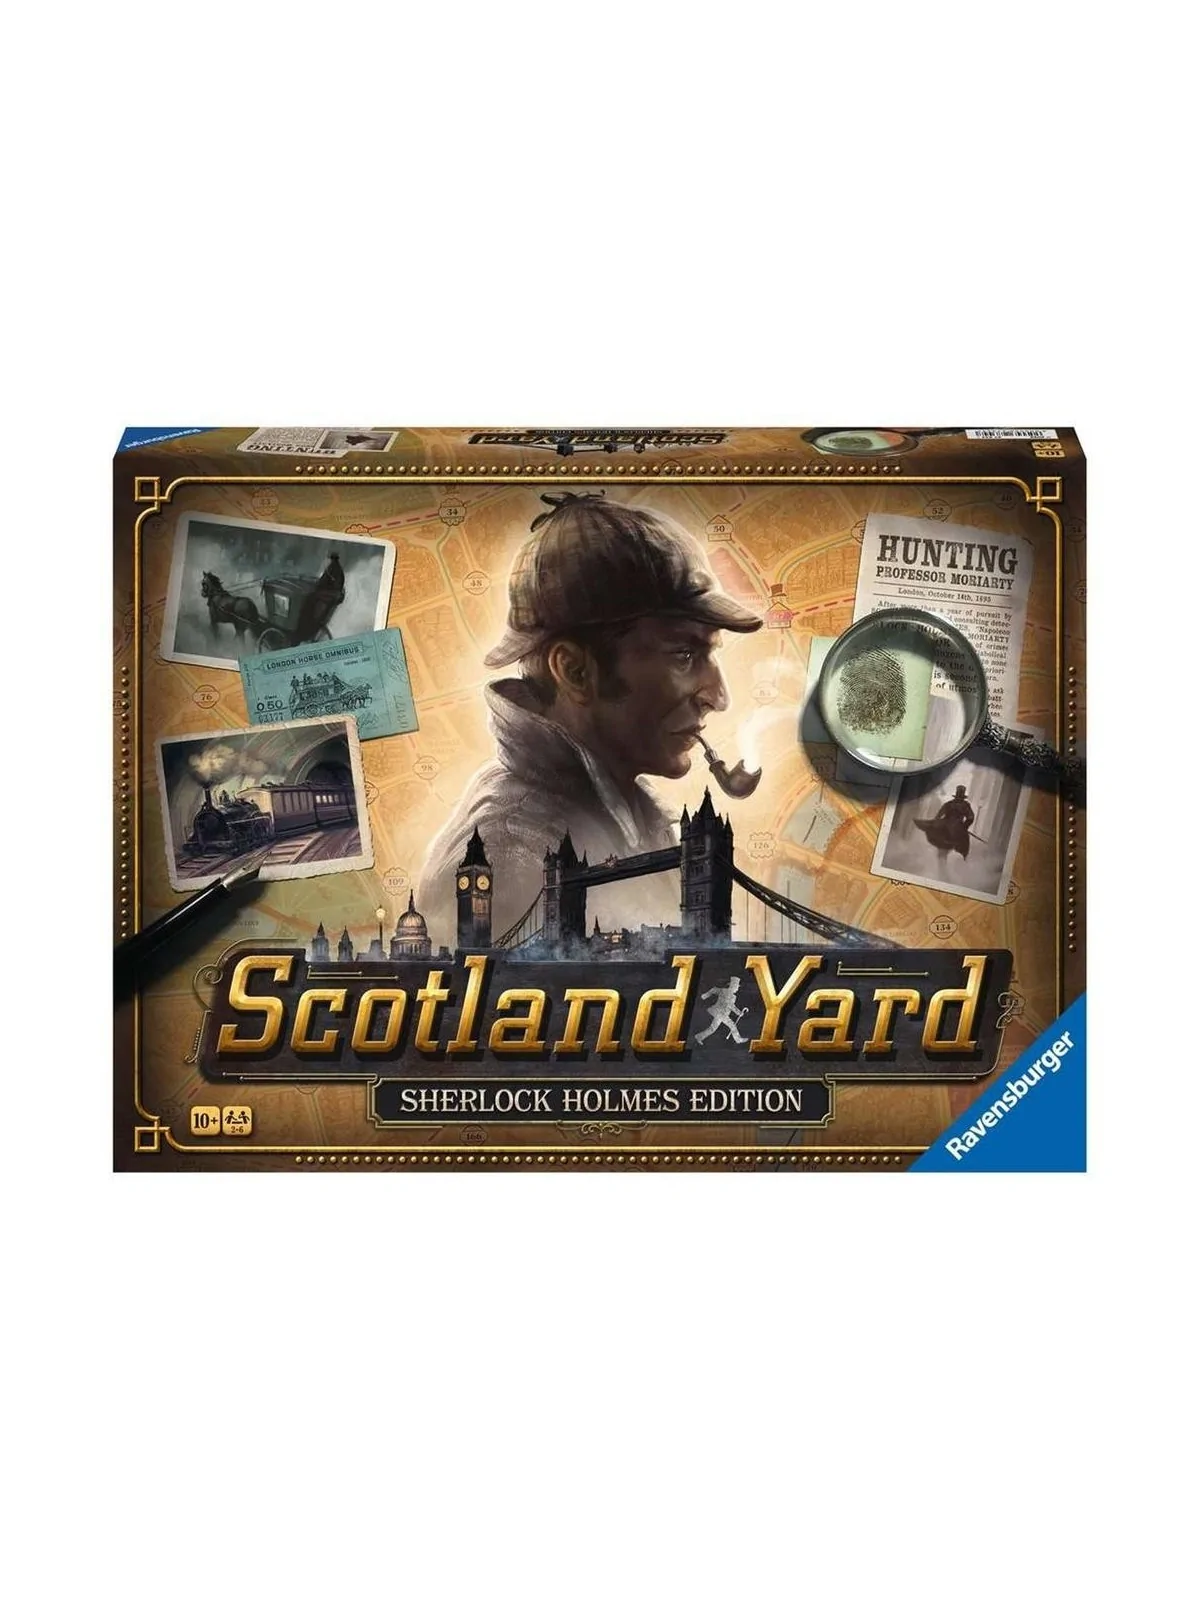 Comprar Scotland Yard: Edicion Sherlock Holmes barato al mejor precio 